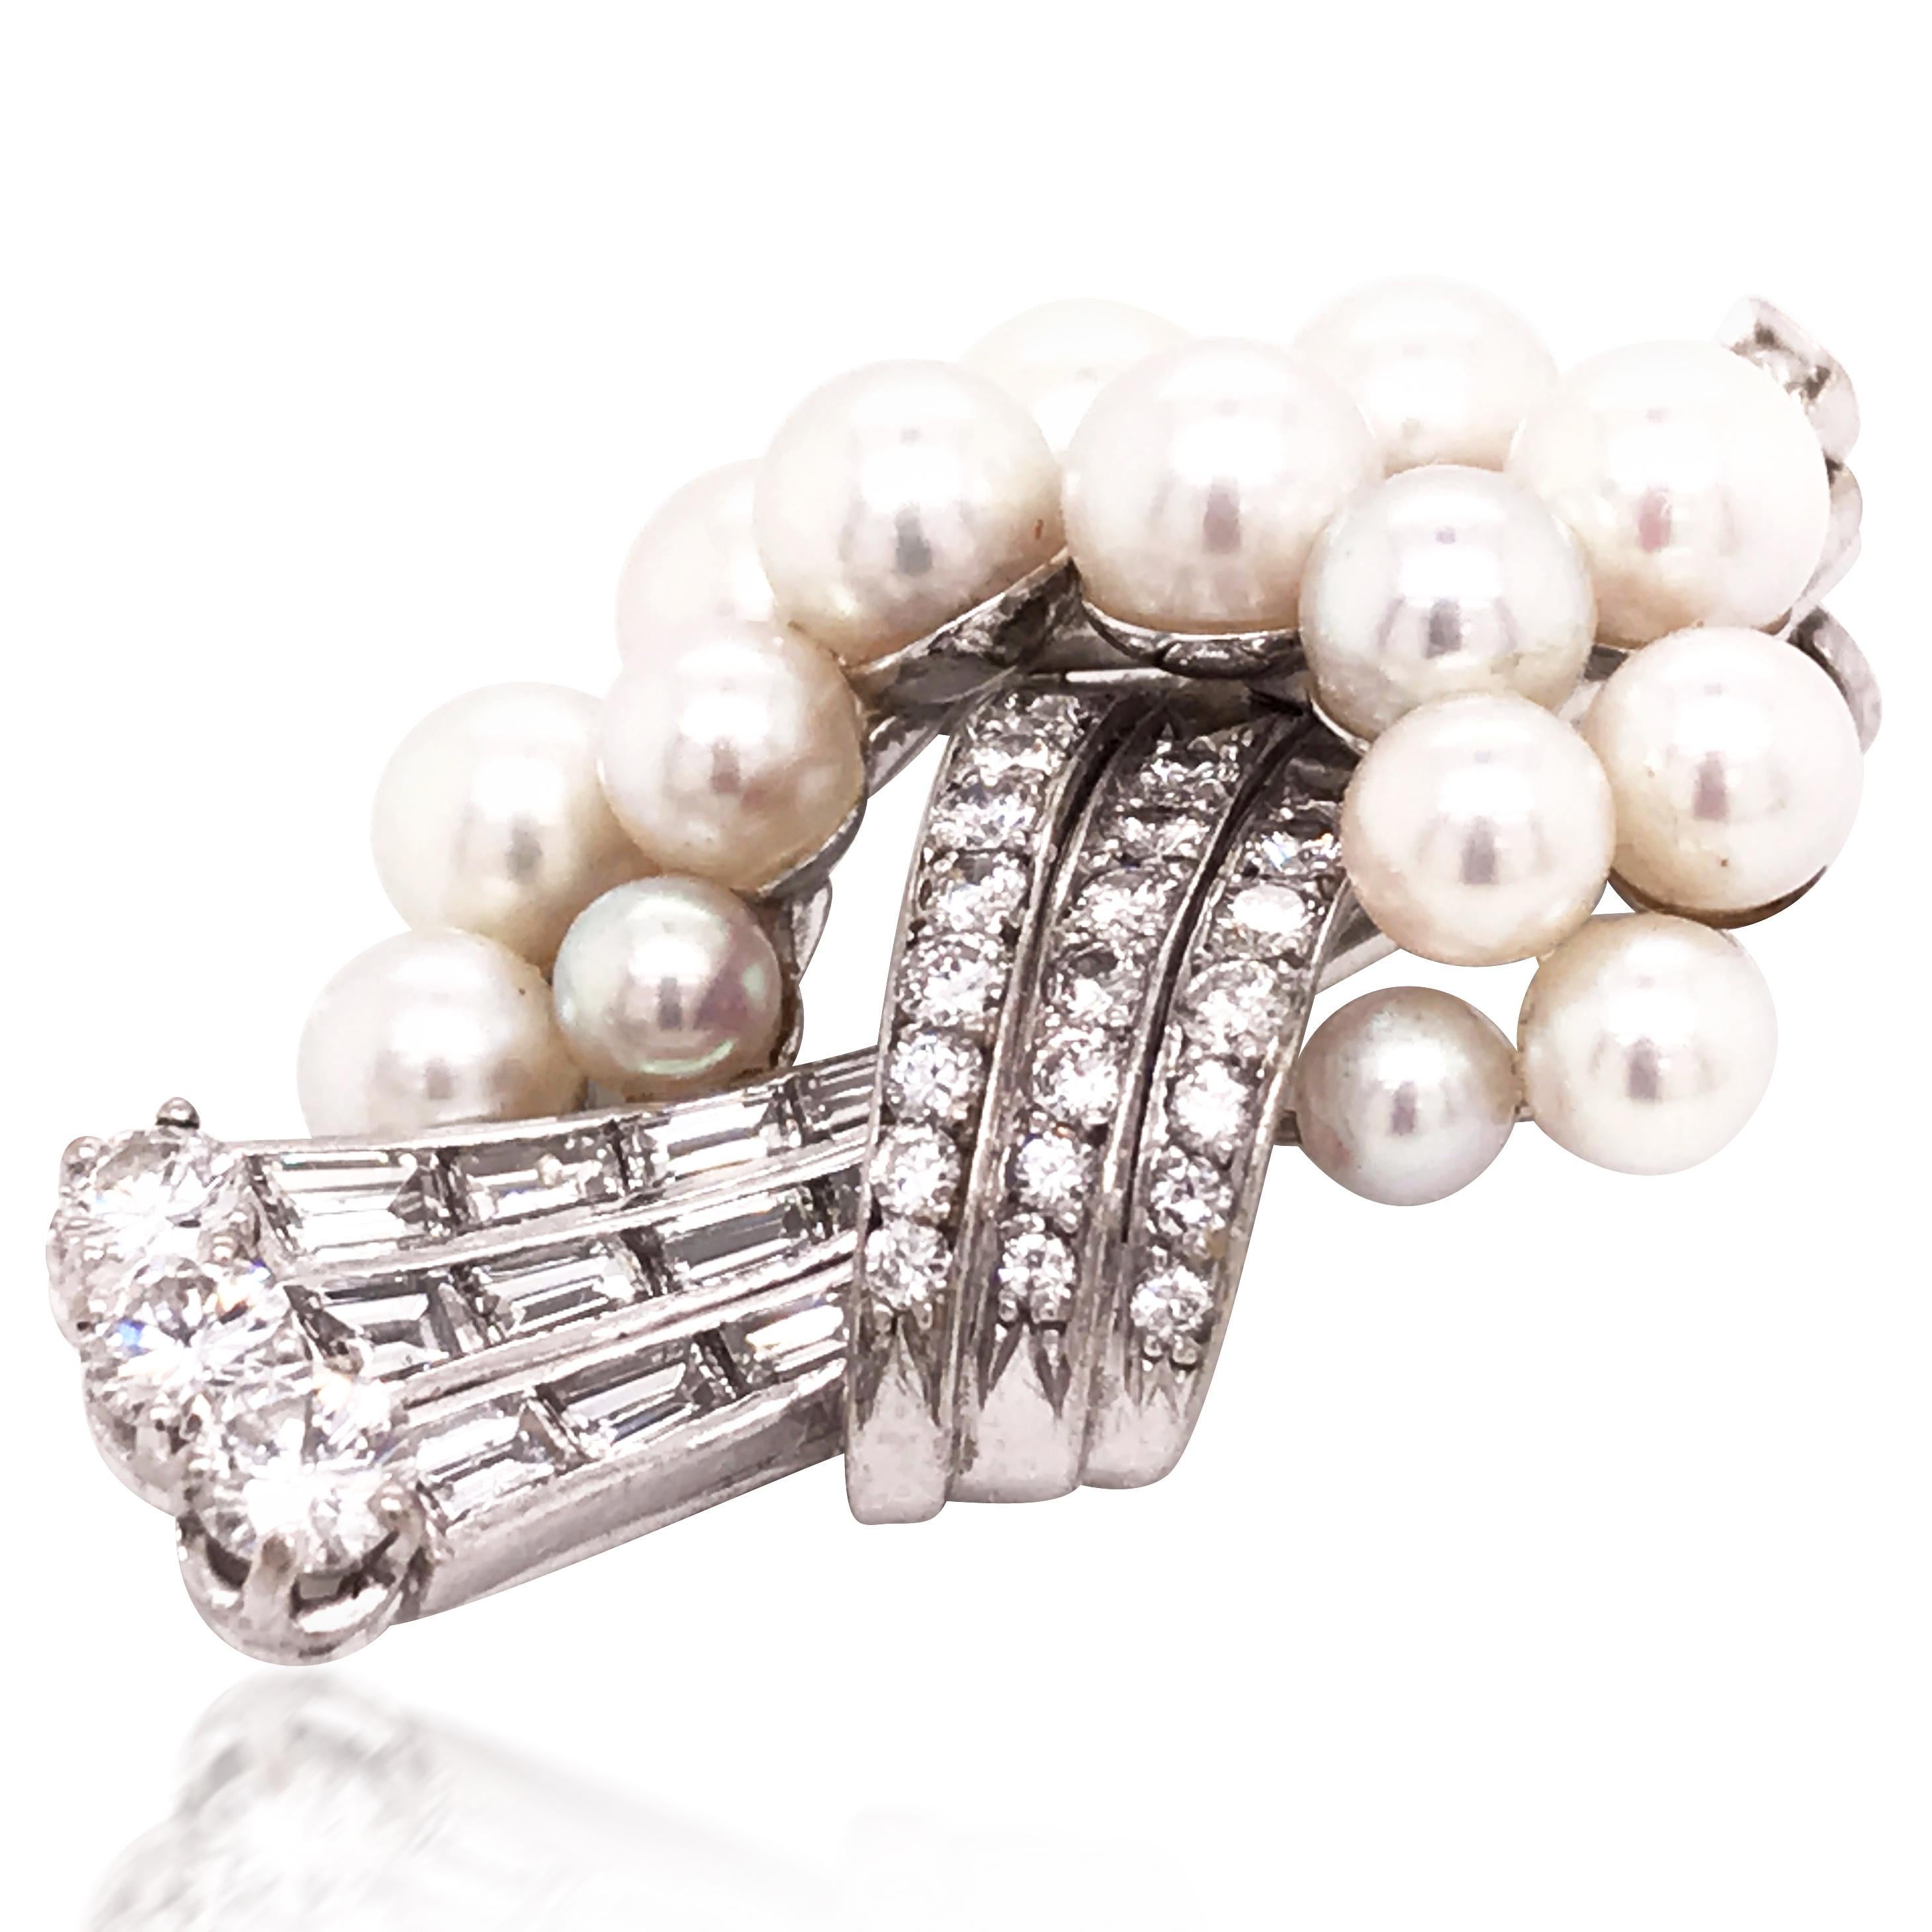 La broche, datant de 1950, est composée de perles de culture et d'une ligne de diamants taille brillant et baguette.

Cachet : Travail d'assayage suisse et monogramme.
Poids : 10,9 grammes
Mesure : 3.8 x 2,4 cm